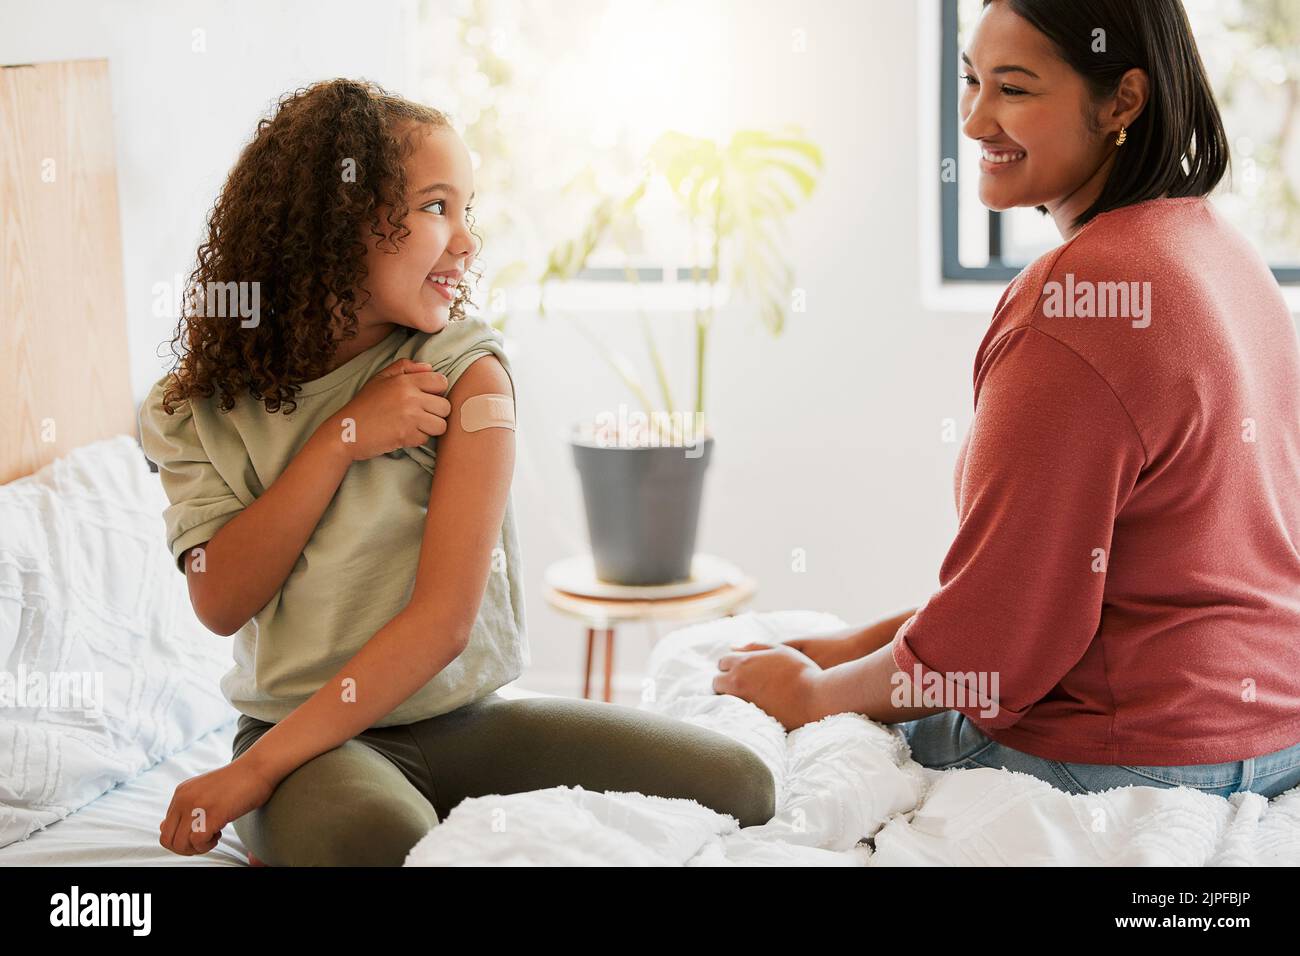 La ragazza con vaccino covid mostra la madre vaccinata braccio con cerotto come protezione covid19 per un bambino in una casa da letto. Bambino dopo l'iniezione Foto Stock